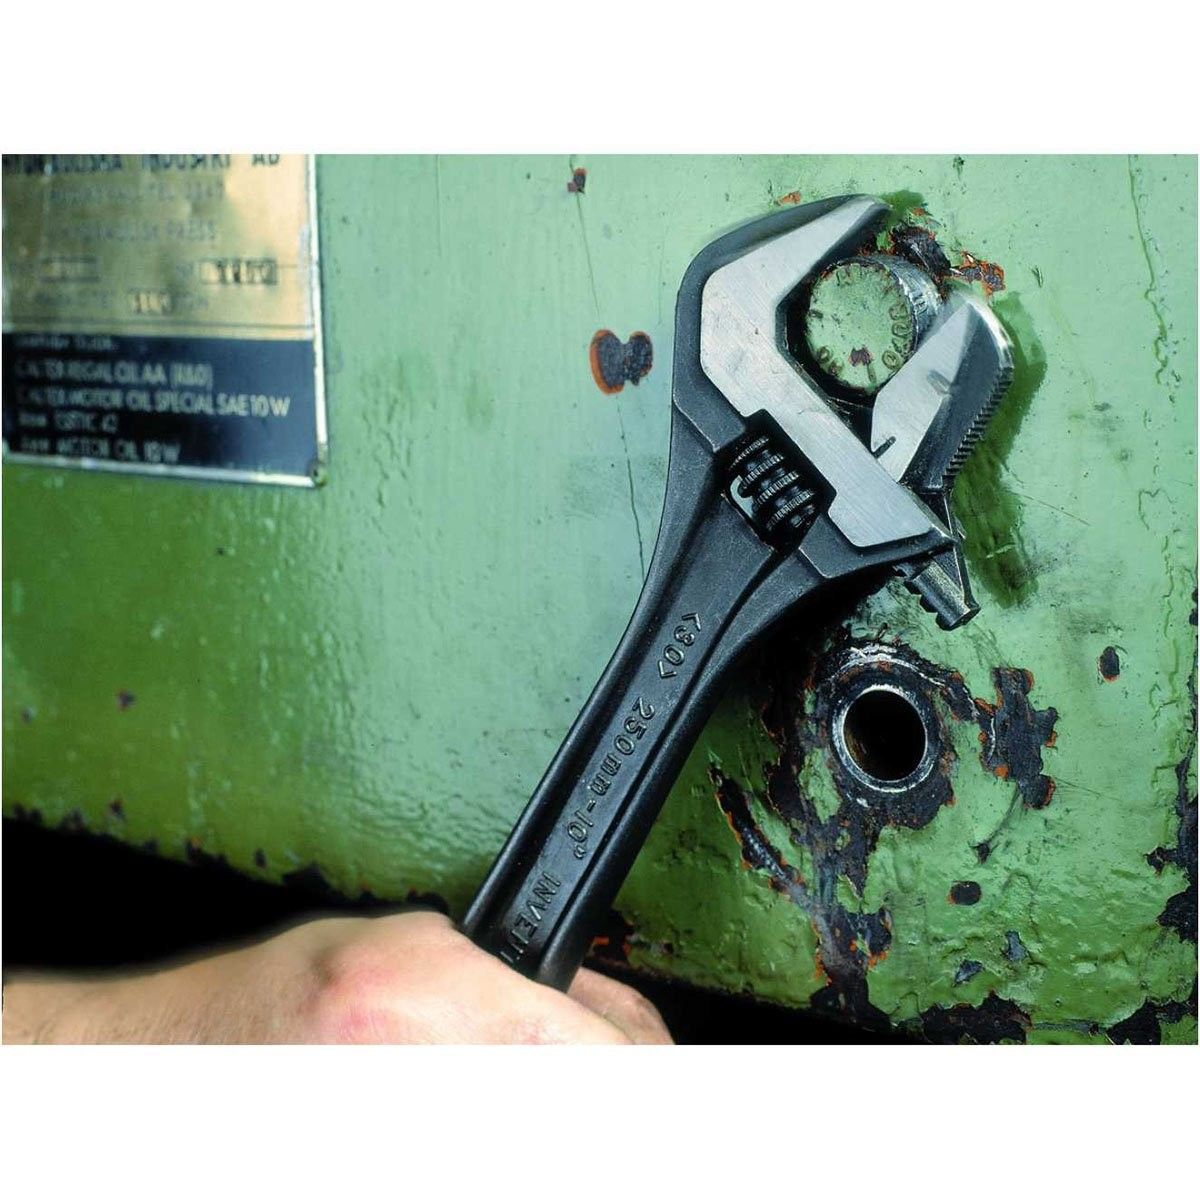 Chiave inglese regolabile a rullino, 10 apertura massima mm 30 BAHCO 8072  - Articoli di ferramenta - Erashop Market Place